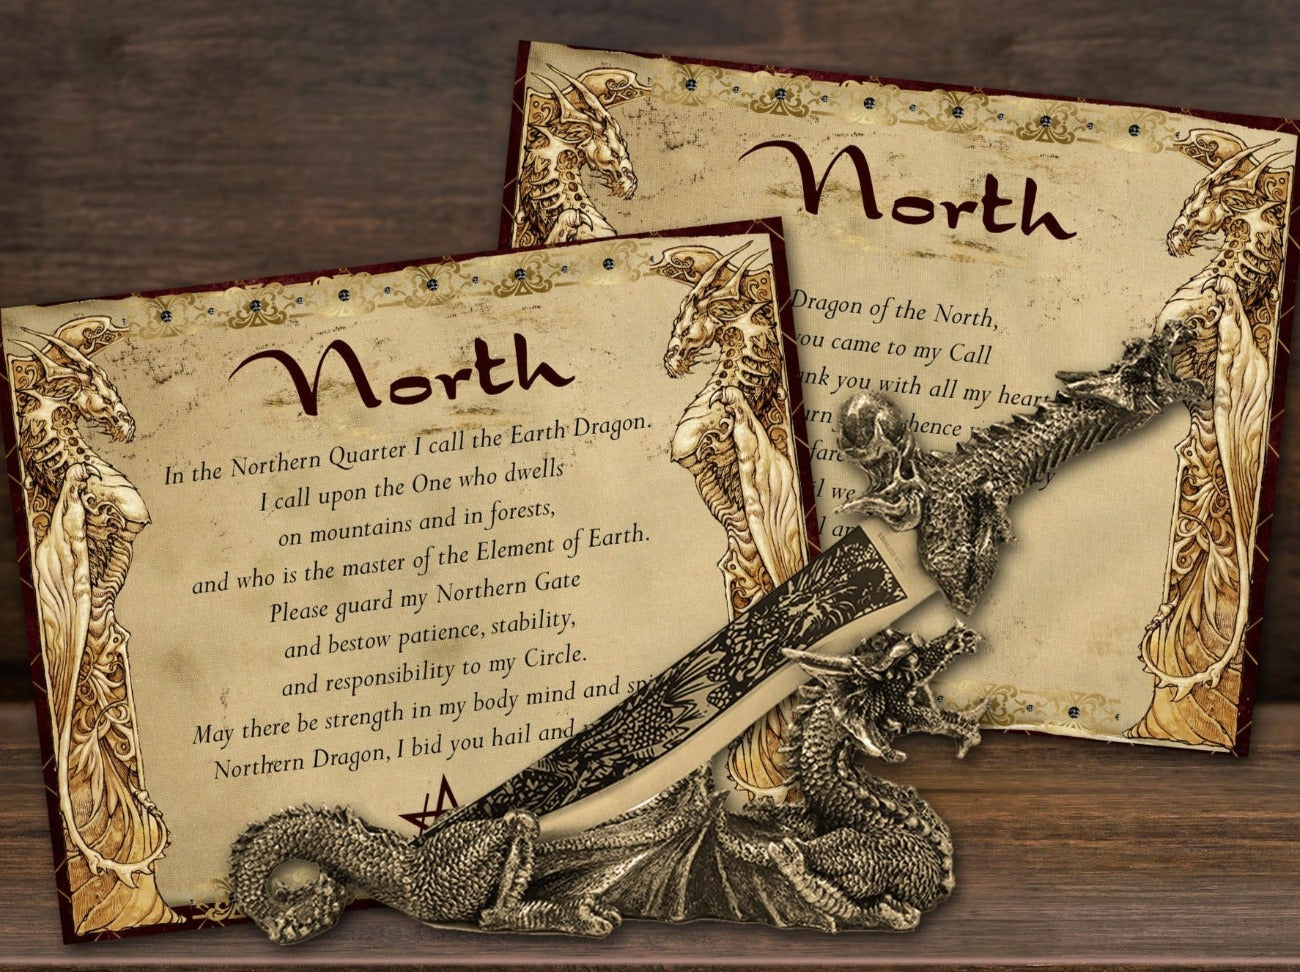 NORTH SOUTH DRAGON QUARTER CALLS Cast a Magic Dragon Circle - Morgana Magick Spell